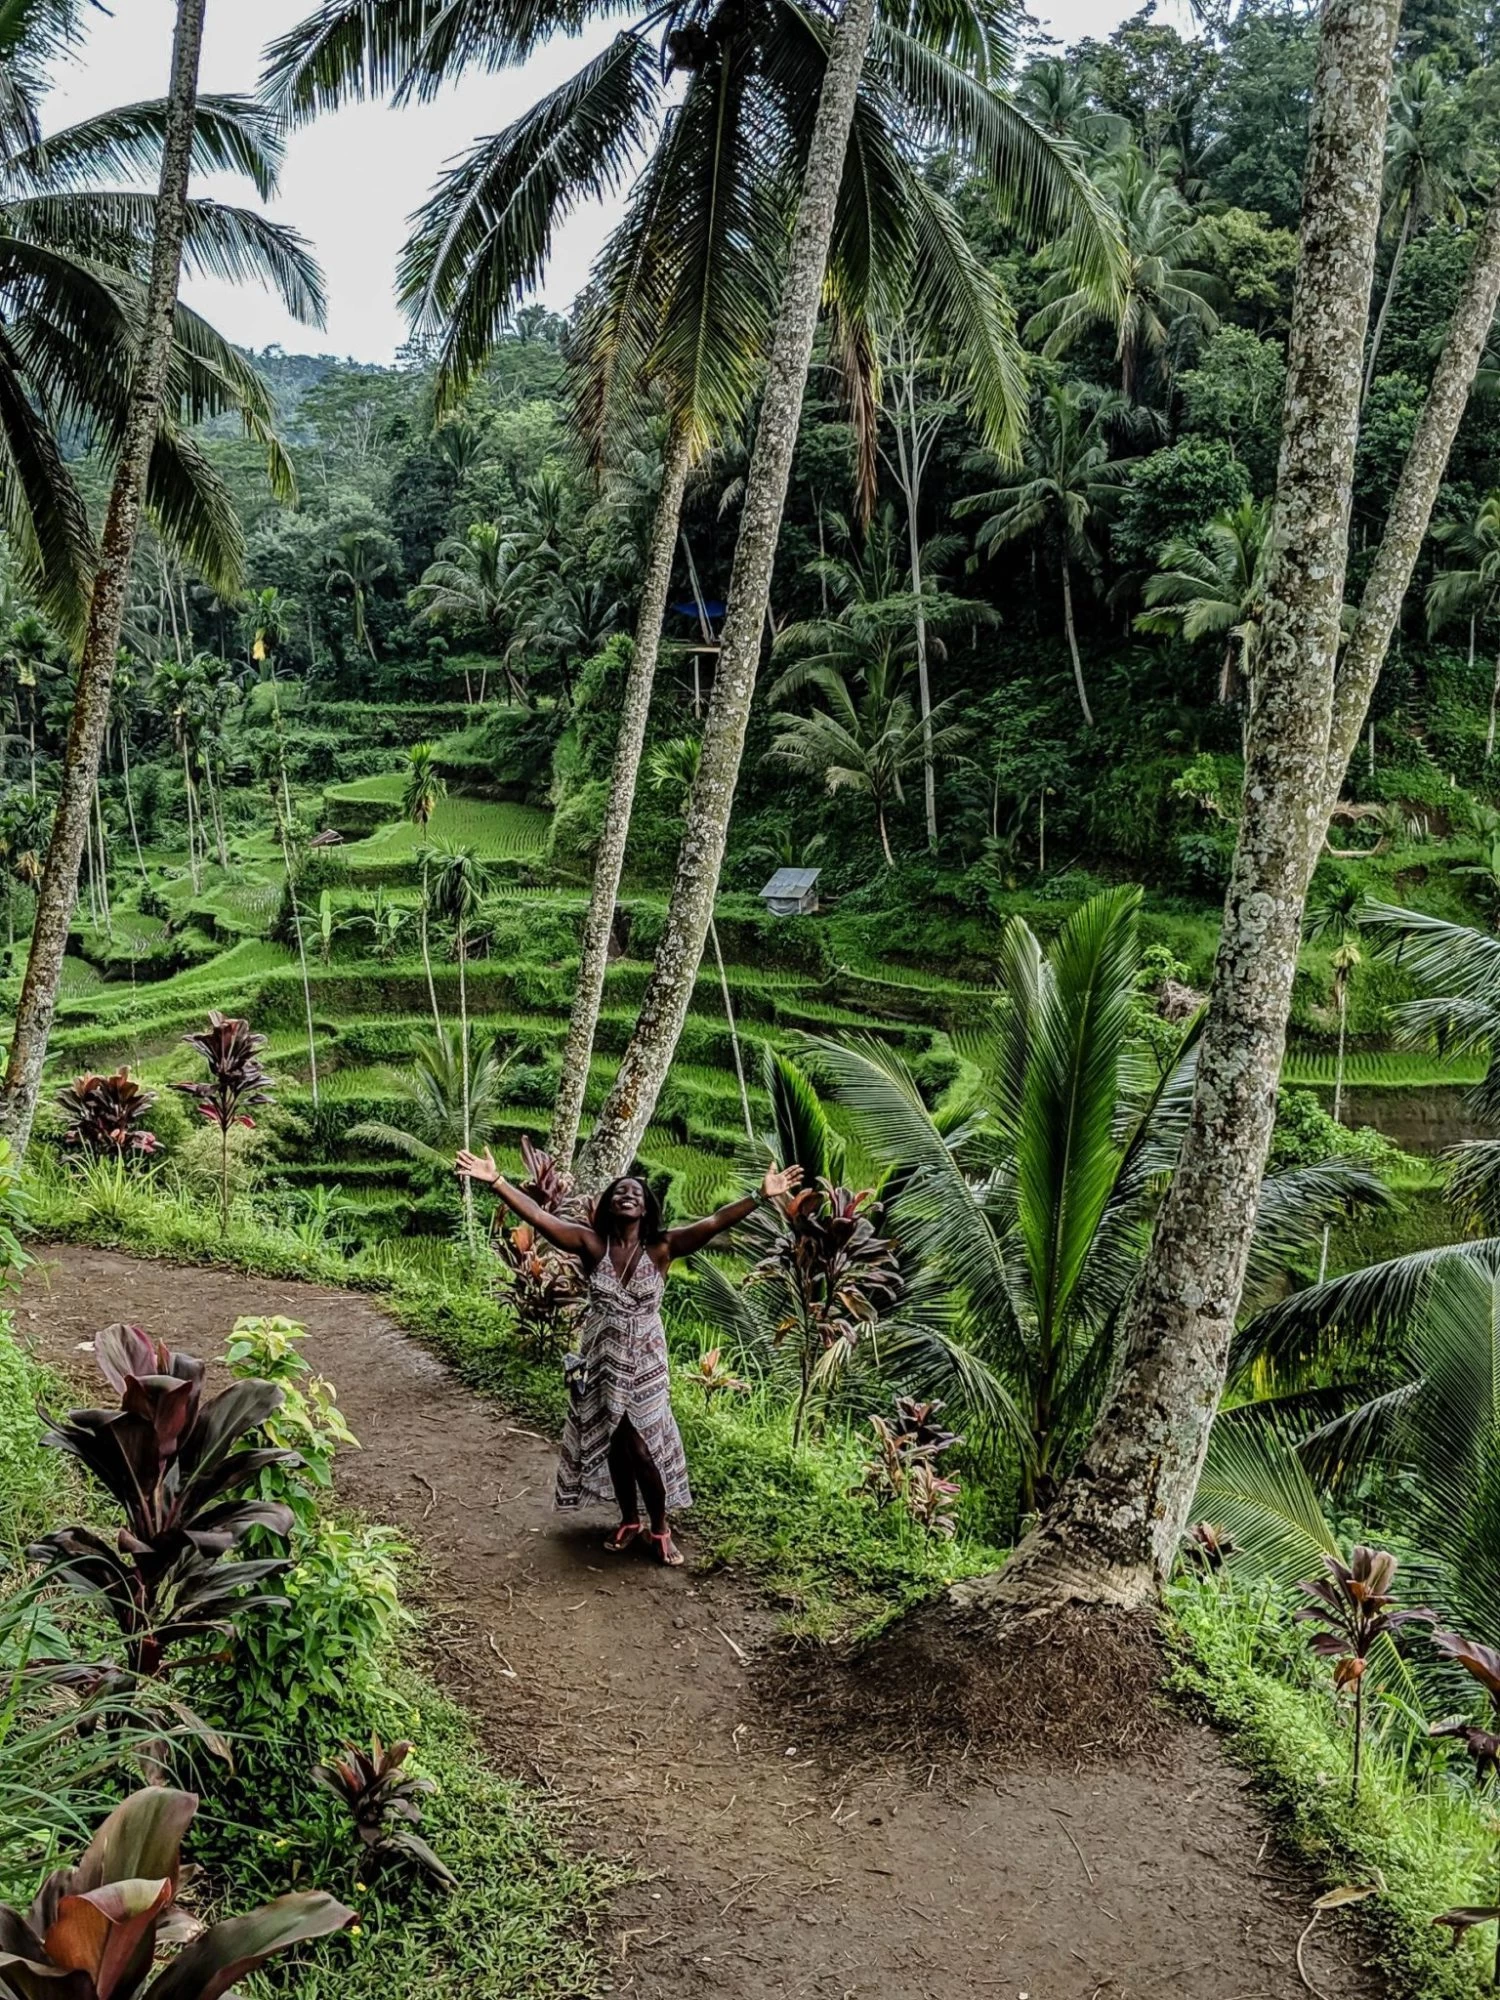 Exploring the beautiful Tegalalang Rice Terrace in Bali